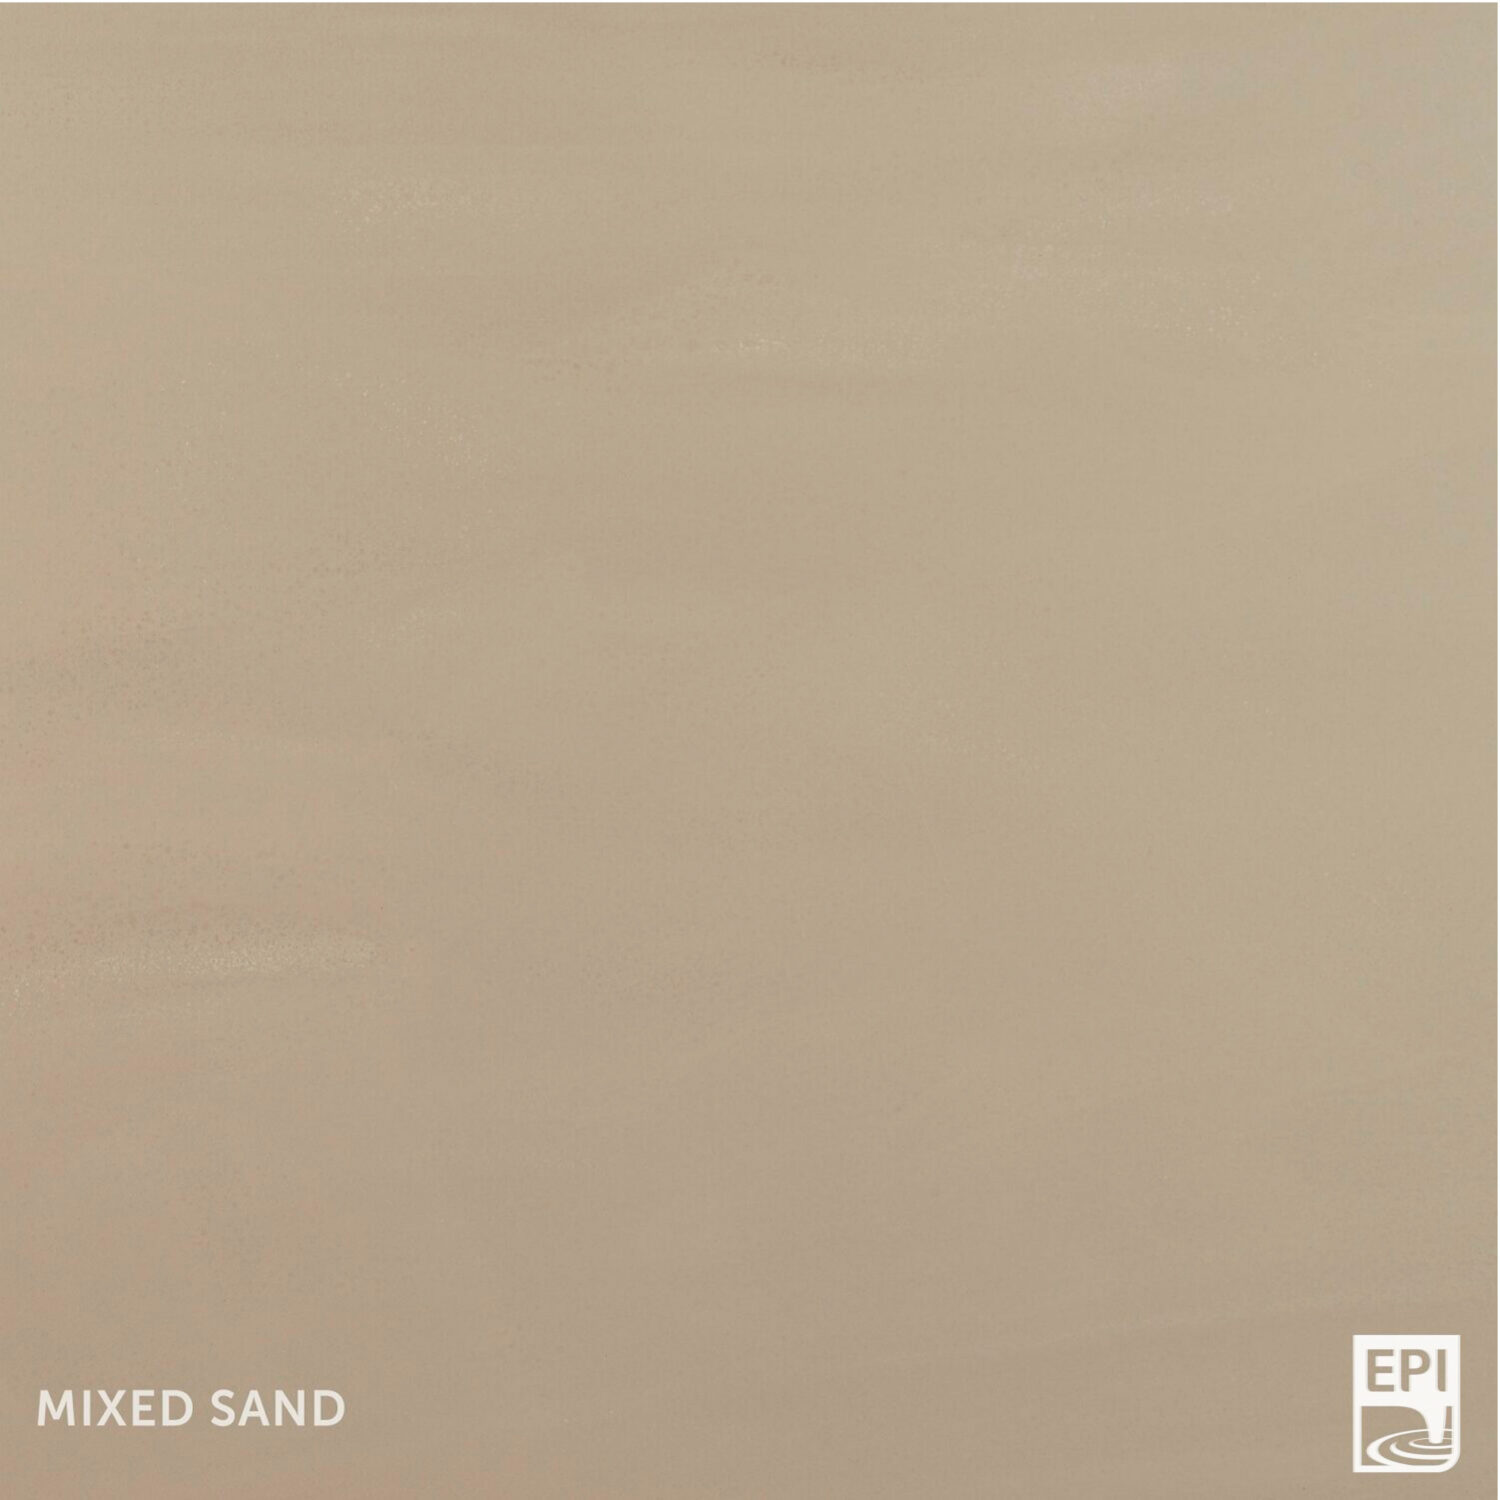 CN Blend Mixed Sand